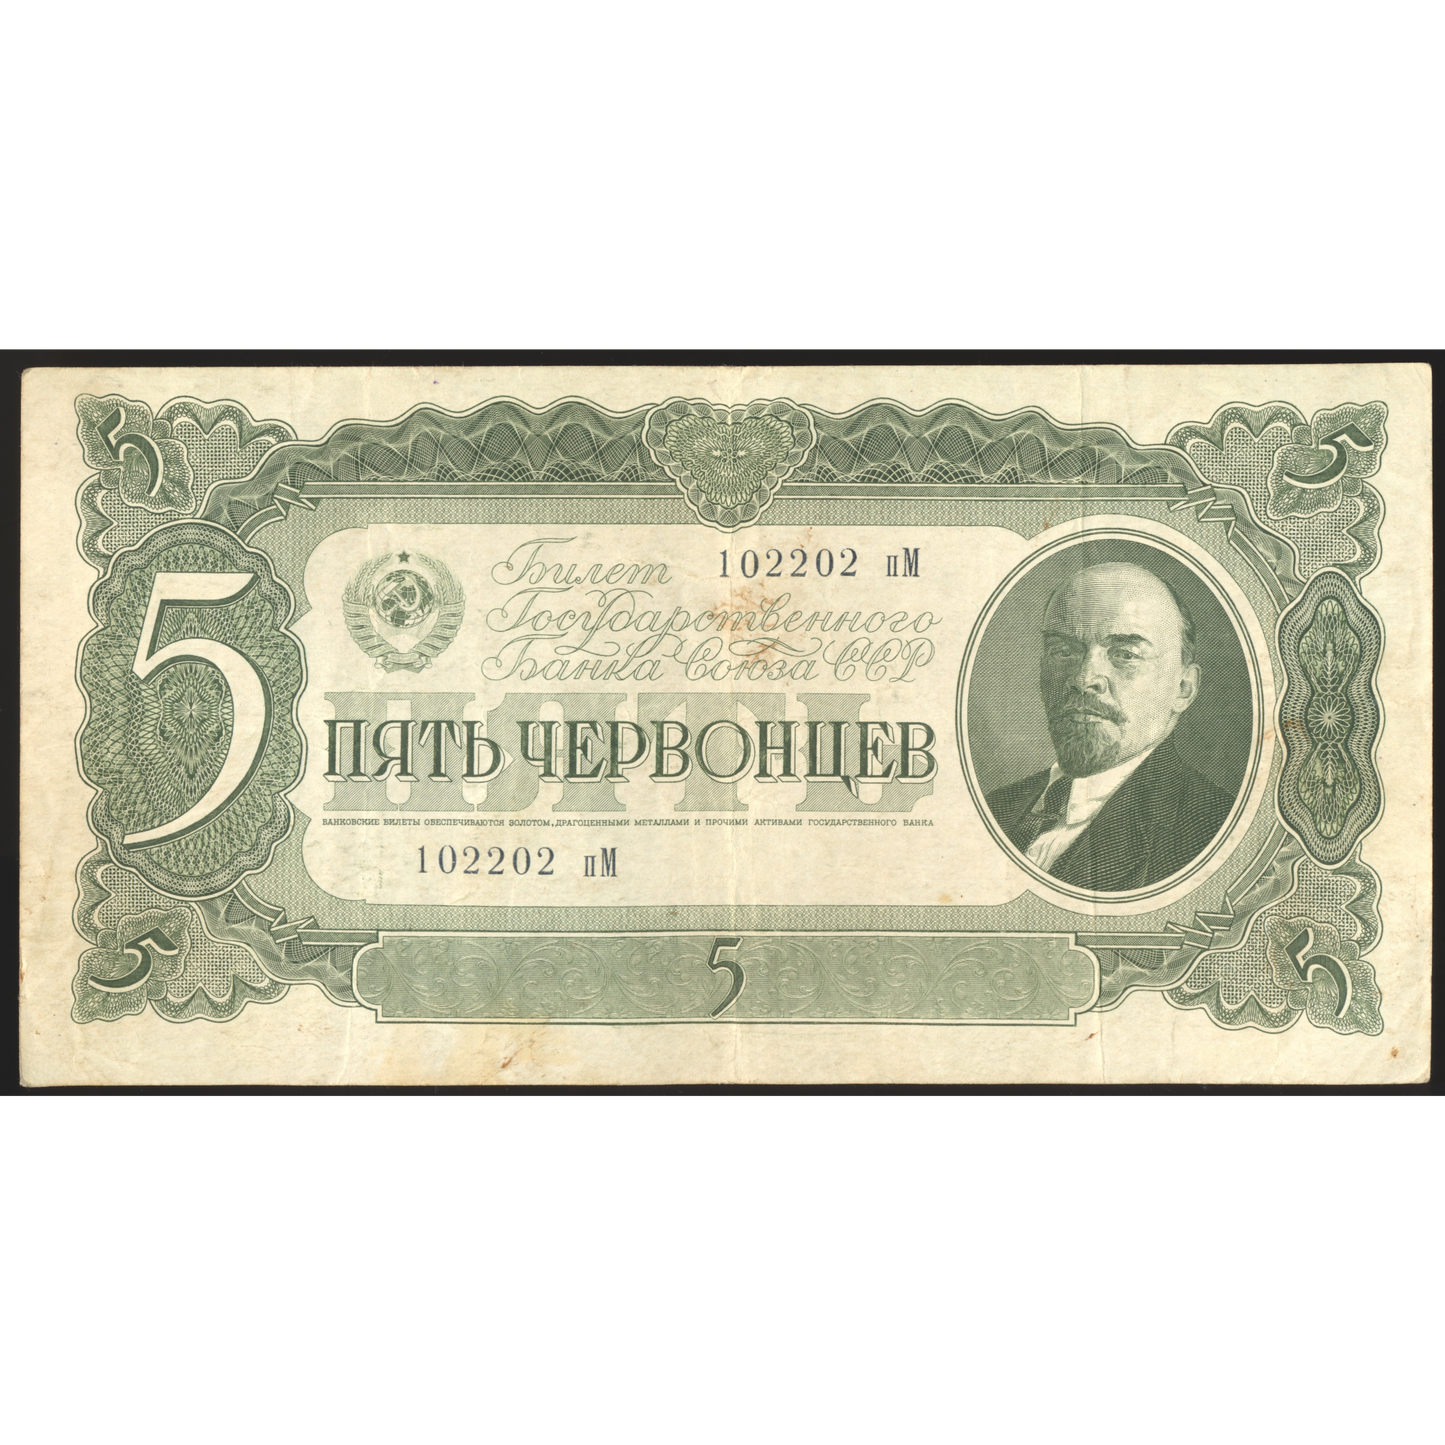 RUSSIA P.204 1937 5 rubles VF